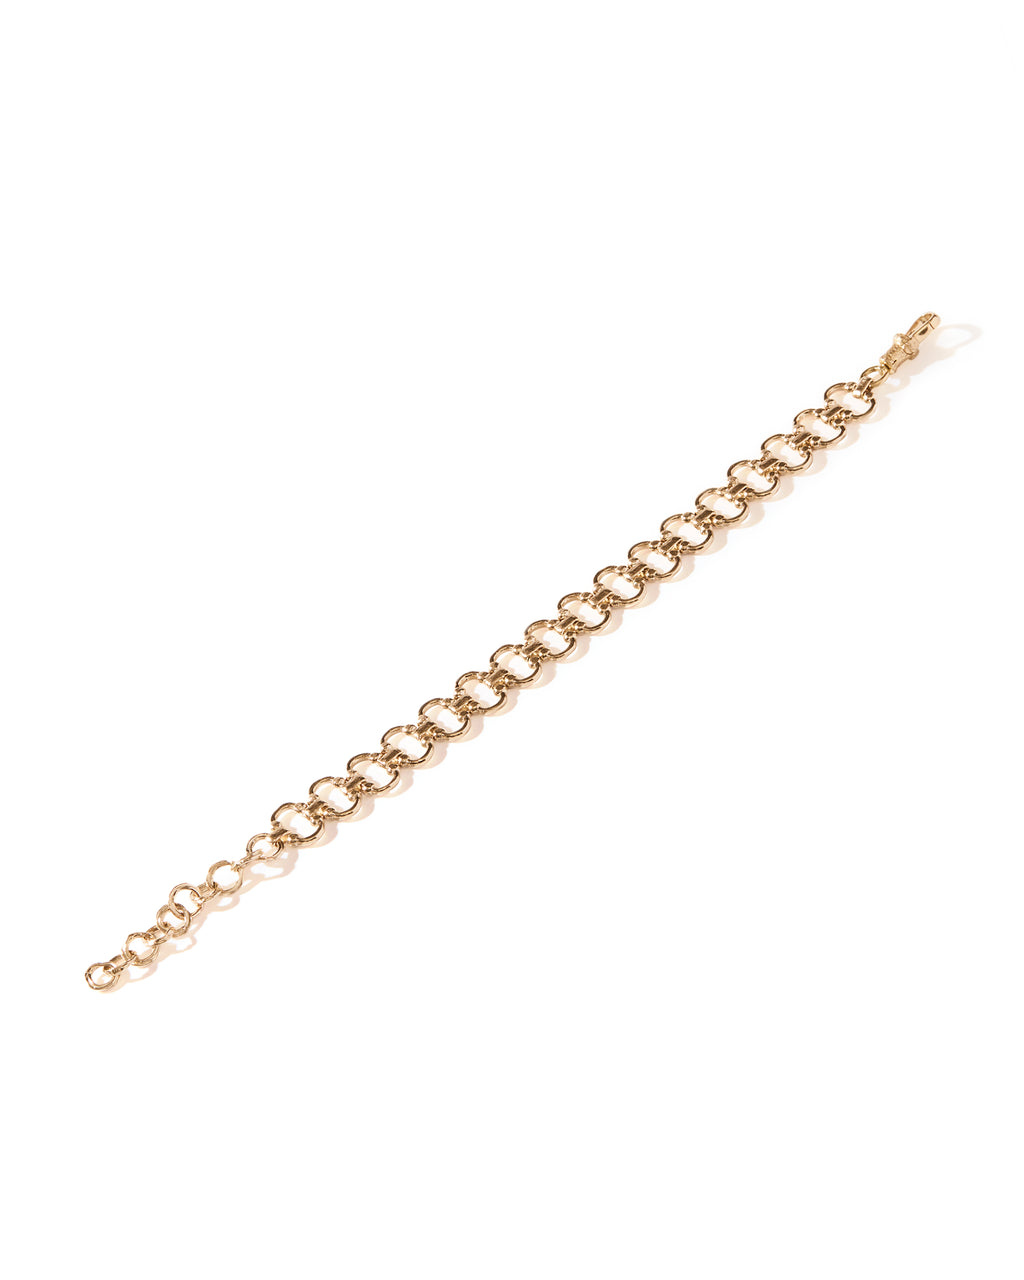 Bracelets faciles en élastiques : Lucy Hopping - 2295004969